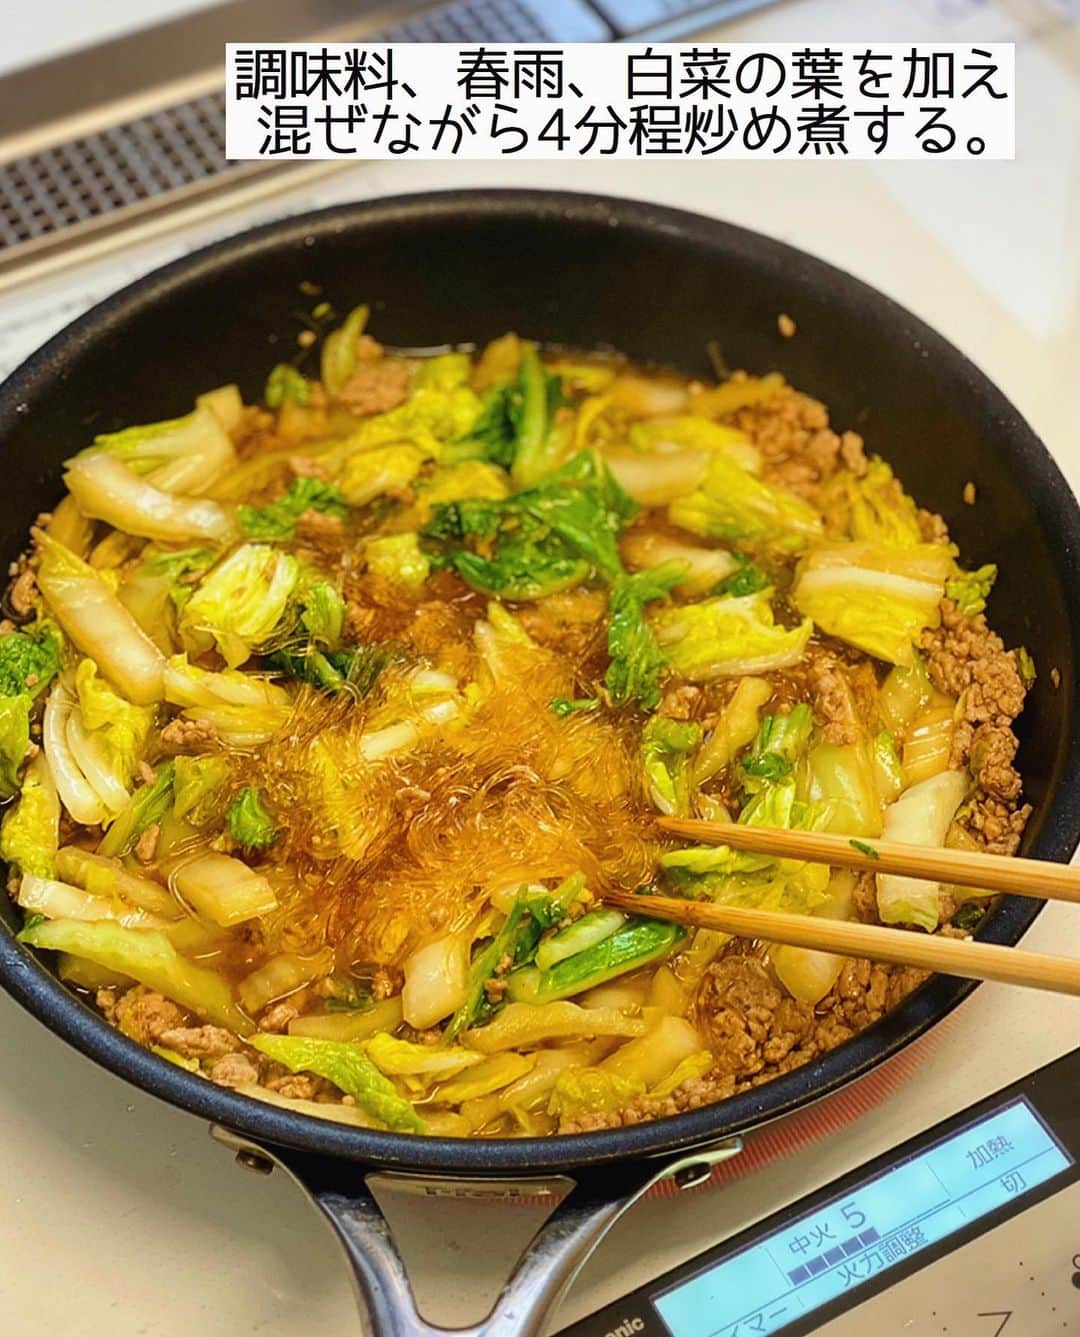 Mizuki【料理ブロガー・簡単レシピ】さんのインスタグラム写真 - (Mizuki【料理ブロガー・簡単レシピ】Instagram)「・﻿ 【#レシピ 】ーーーーーーーーーーーーーーー﻿ 戻さないから超簡単！ひき肉と白菜の春雨煮﻿ (2品献立提案あり)﻿ ーーーーーーーーーーーーーーーーーーーーー﻿ ﻿ ﻿ ﻿ おはようございます(*^^*)﻿ ﻿ 今日ご紹介させていただくのは﻿ 和風味の春雨煮♡﻿ 具はひき肉と白菜でコスパ抜群！﻿ しかも春雨は戻さず使える﻿ 超〜簡単レシピです(*´艸`)﻿ 旨味満点のスープを吸って﻿ とっても美味しく仕上がりますよー♡﻿ ﻿ フライパンひとつでできるので﻿ お気軽にお試し下さいね(*^^*)﻿ ﻿ ﻿ ﻿ ＿＿＿＿＿＿＿＿＿＿＿＿＿＿＿＿＿＿＿＿﻿ 【2人分】﻿ 豚ひき肉...100g﻿ 白菜...1/5株(300g)﻿ 春雨...40g﻿ ごま油...小1﻿ ●水...200ml﻿ ●酒...大2﻿ ●醤油...大1.5﻿ ●砂糖...大1/2﻿ ﻿ 1.白菜の芯は1cm幅に、葉はざく切りにする。春雨は長ければ半分に切る。﻿ 2.フライパンにごま油を中火で熱し、ひき肉と白菜の芯を入れ、白菜の芯がしんなりするまで炒める。﻿ 3.●、春雨、白菜の葉を加え、混ぜながら4分程炒め煮する。﻿ ￣￣￣￣￣￣￣￣￣￣￣￣￣￣￣￣￣￣￣￣﻿ ﻿ ﻿ ﻿ 《ポイント》﻿ ♦︎鶏ひき肉で作っても♩﻿ ♦︎春雨は煮汁に浸かるようにして炒め煮して下さい♩﻿ ♦︎春雨の種類によってまだ硬い場合は適量水を加えて煮込み時間を長めにして下さい☆﻿ ﻿ ﻿ ﻿ ﻿ ﻿ ﻿ ﻿ ＿＿＿＿＿＿＿＿＿＿＿＿＿＿＿＿＿﻿ 🥣🥣🥣 2品献立提案 🥣🥣🥣﻿ ￣￣￣￣￣￣￣￣￣￣￣￣￣￣￣￣￣﻿ 【合間に作れるおすすめ副菜】﻿ >じゃがバタコーン(P.17)﻿ >にんじんマカロニサラダ(P.89)﻿ (#Mizukiの2品献立 より)﻿ ﻿ 【献立の段取り】﻿ 副菜をレンジにかけてからメインを作る🥢﻿ ￣￣￣￣￣￣￣￣￣￣￣￣￣￣￣￣￣﻿ ﻿ ﻿ ﻿ ﻿ ﻿ ﻿ ⭐️発売中⭐️3刷重版が決まりました😭﻿ 本当にありがとうございます(涙)﻿ _____________________________________﻿ \15分でいただきます/﻿ 📕#Mizukiの2品献立 📕﻿ (9月24日発売・マガジンハウス)﻿ ￣￣￣￣￣￣￣￣￣￣￣￣￣￣￣￣￣﻿ ﻿ 忙しい私たちには﻿ 2品くらいがちょうどいい！﻿ 『しんどくない献立、考えました』﻿ ￣￣￣￣￣￣￣￣￣￣￣￣￣￣￣￣﻿ ﻿ ーーーーーPART.1 ーーーーー﻿ 【Mizukiのお墨つき！２品献立ベスト10】﻿ 約15分でできる10献立をご紹介！﻿ メインは全部フライパン、副菜はレンチンor混ぜるだけ♡﻿ ﻿ ーーーーーPART.2 ーーーーー﻿ 【フライパンひとつ！今夜のメインおかず】﻿ 献立の主役になる肉や魚のおかず50品！﻿ Part3の副菜と組み合わせれば﻿ 献立のバリエーションが広がりますよ♩﻿ ﻿ ーーーーー PART.3 ーーーーー﻿ 【合間に作れる！ 野菜別かんたん副菜】﻿ レンチンor和えるだけの副菜レシピを﻿ 素材別にたっぷり収録♩﻿ ﻿ ーーーーー番外編ーーーーー﻿ 【ひとつで満足！ご飯＆麺】﻿ 【具だくさん！おかずスープ】﻿ 【オーブンいらずのおやつレシピ】﻿ ￣￣￣￣￣￣￣￣￣￣￣￣￣￣￣￣￣￣﻿ (ハイライトにリンク🔗あります💗)﻿ ﻿ ﻿ ﻿ ﻿ ＿＿＿＿＿＿＿＿＿＿＿＿＿＿＿＿＿＿﻿ レシピを作って下さった際や﻿ レシピ本についてのご投稿には﻿ タグ付け( @mizuki_31cafe )して﻿ お知らせいただけると嬉しいです😊💕﻿ ￣￣￣￣￣￣￣￣￣￣￣￣￣￣￣￣￣￣﻿ ﻿ ﻿ ﻿ ﻿ #ひき肉#春雨#フライパン#Mizuki#簡単レシピ#時短レシピ#節約レシピ#料理#フーディーテーブル#マカロニメイト#おうちごはん#デリスタグラマー#料理好きな人と繋がりたい#食べ物#料理記録#おうちごはんlover#写真好きな人と繋がりたい#foodpic#cooking#recipe#lin_stagrammer#foodporn#yummy#f52grams#ひき肉と白菜の春雨煮m」11月9日 7時17分 - mizuki_31cafe